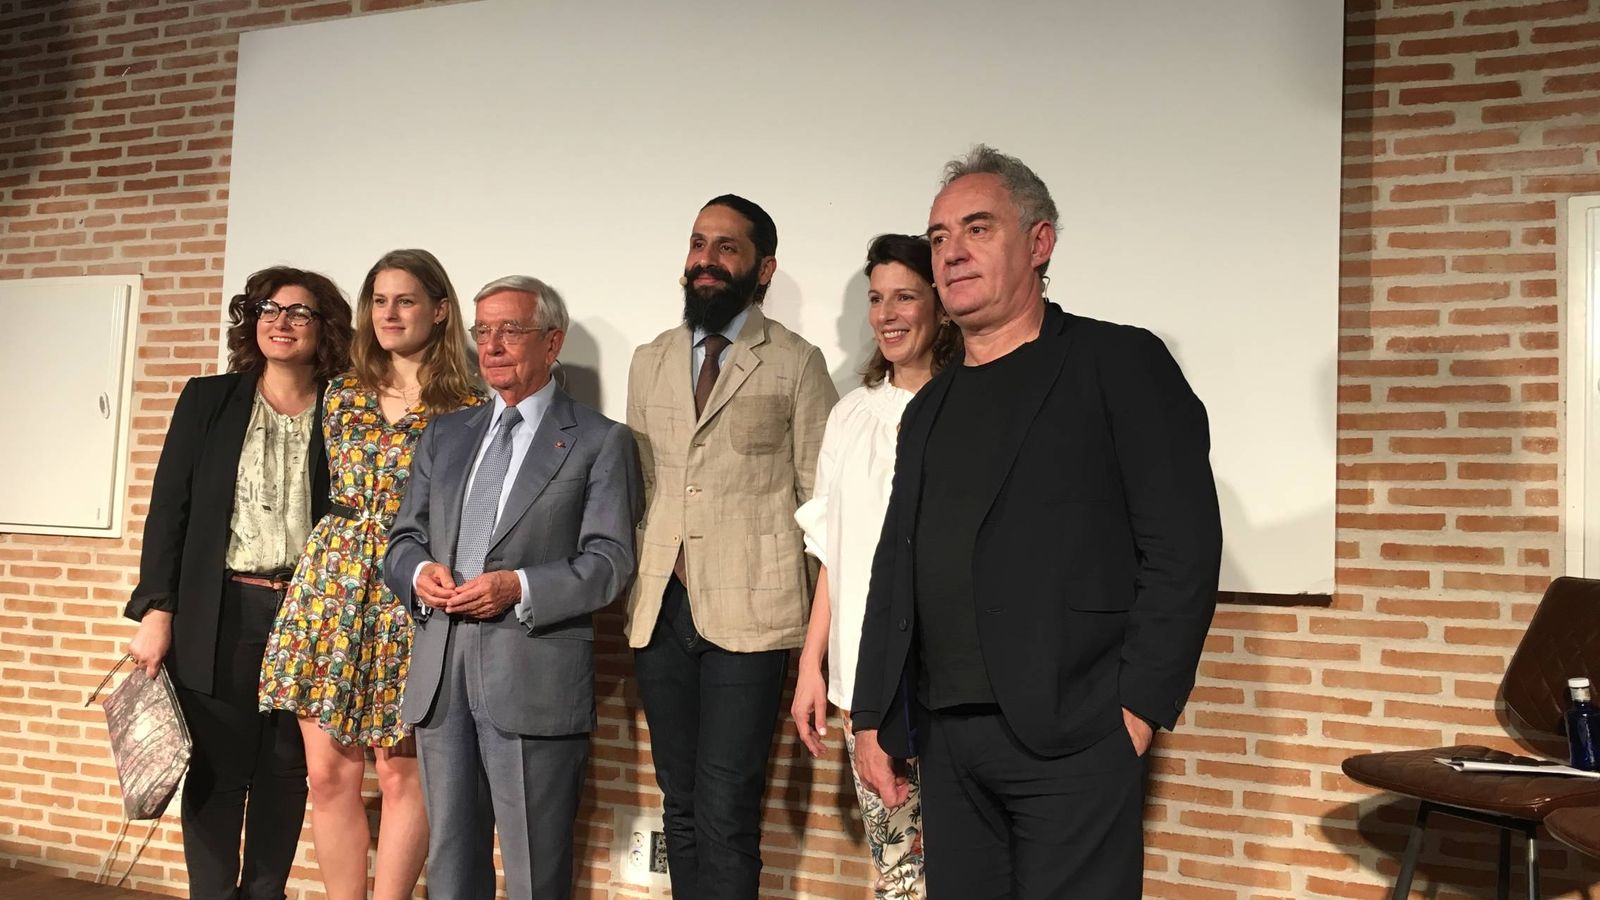 Foto: Adrià, Ansón y Sood en el centro, junto a María Llamas de Alambique y representantes de Google, hoy en Madrid.